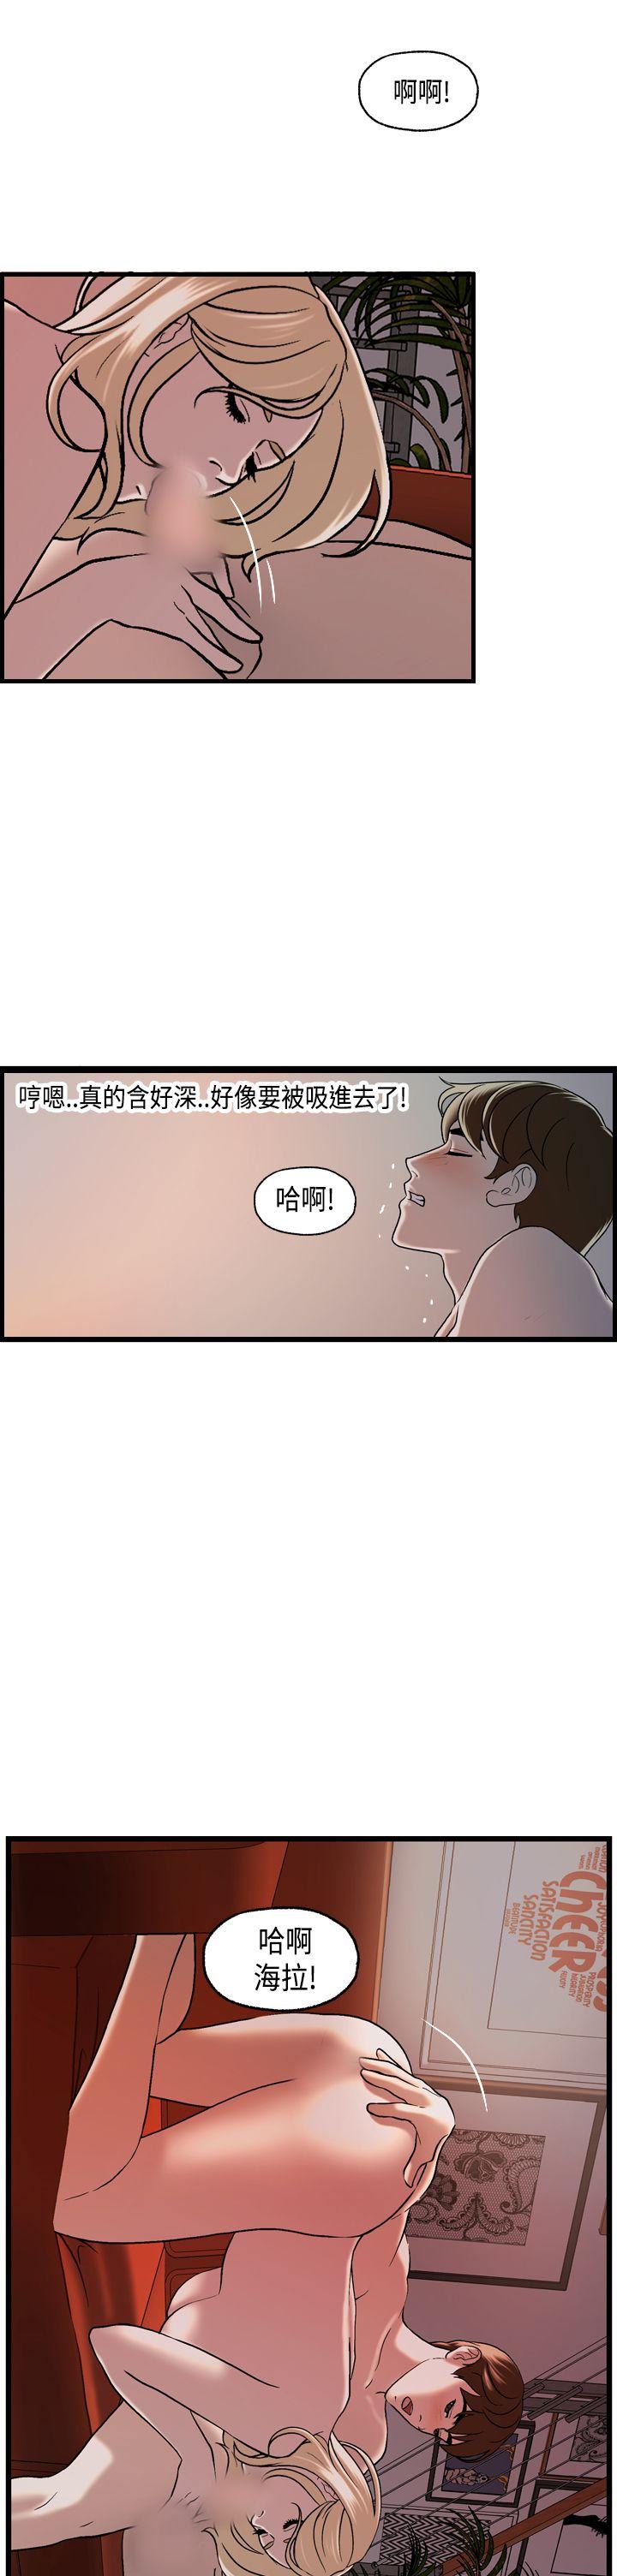 韩国污漫画 激情分享屋(完結) 第24话 2